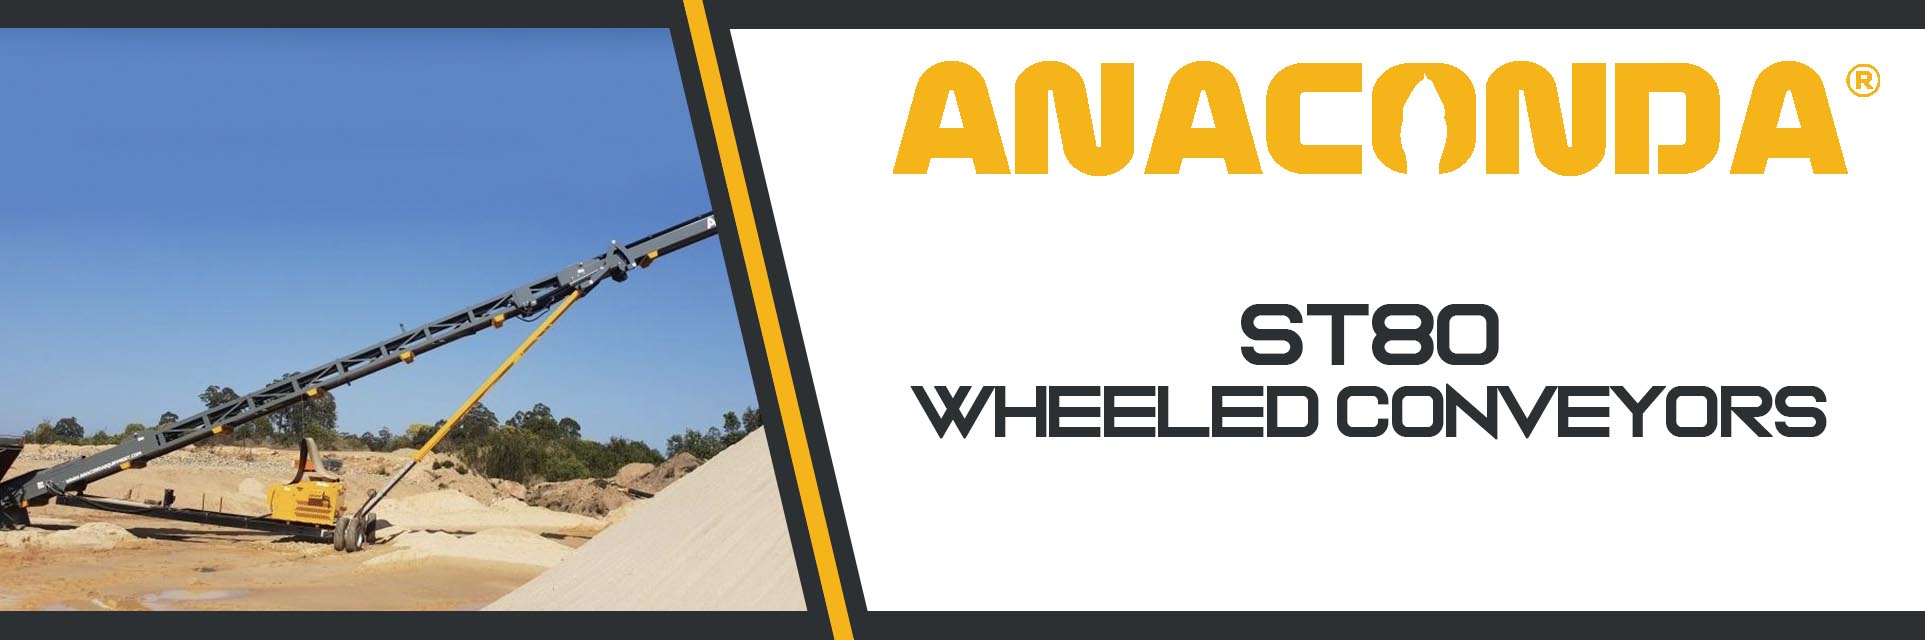 Anaconda ST80 Wheeled Stacker